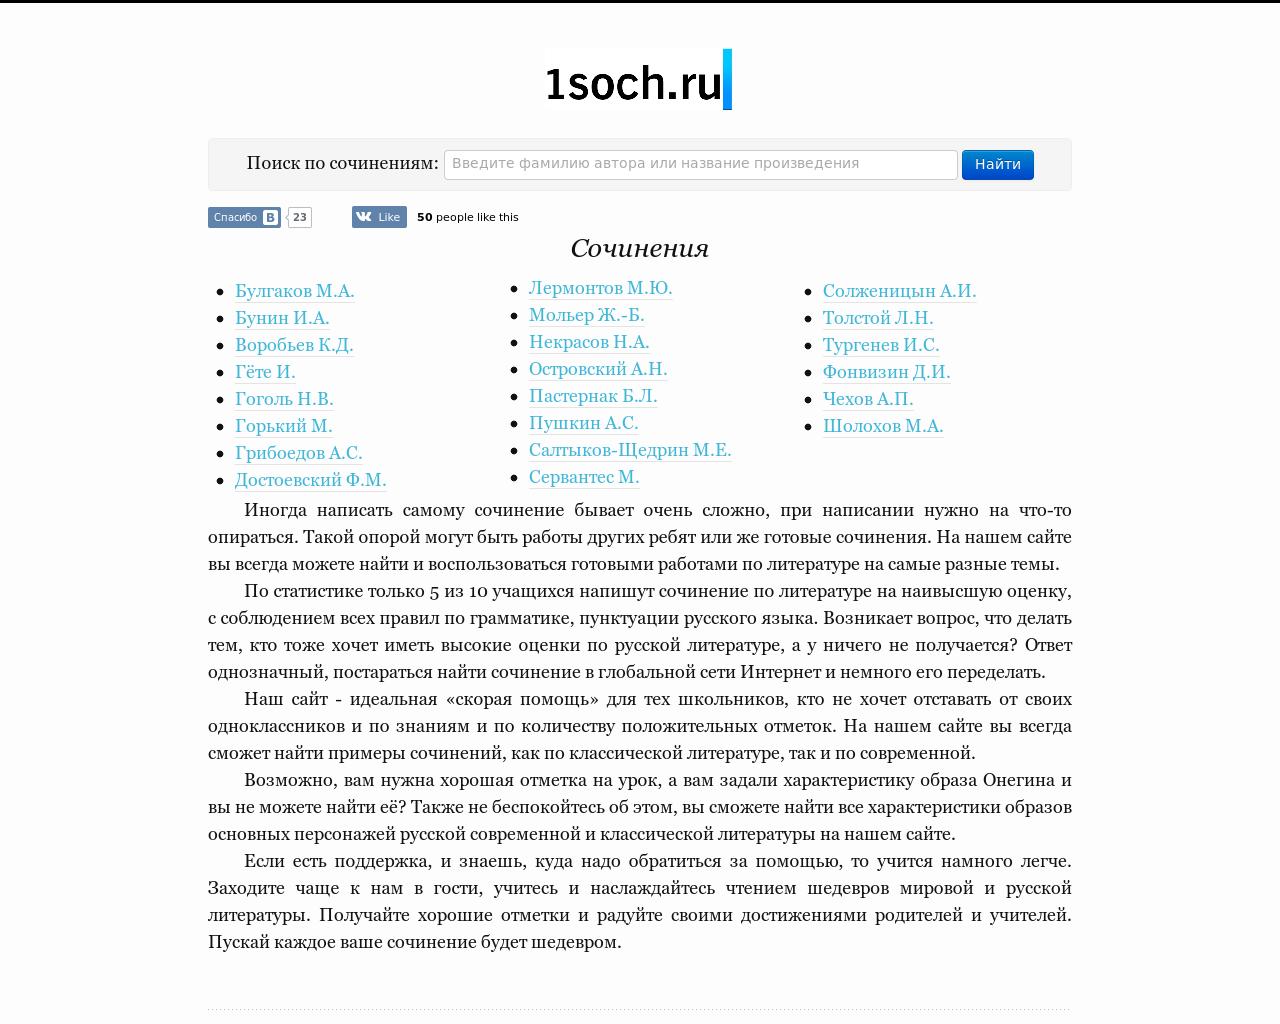 Изображение сайта 1soch.ru в разрешении 1280x1024